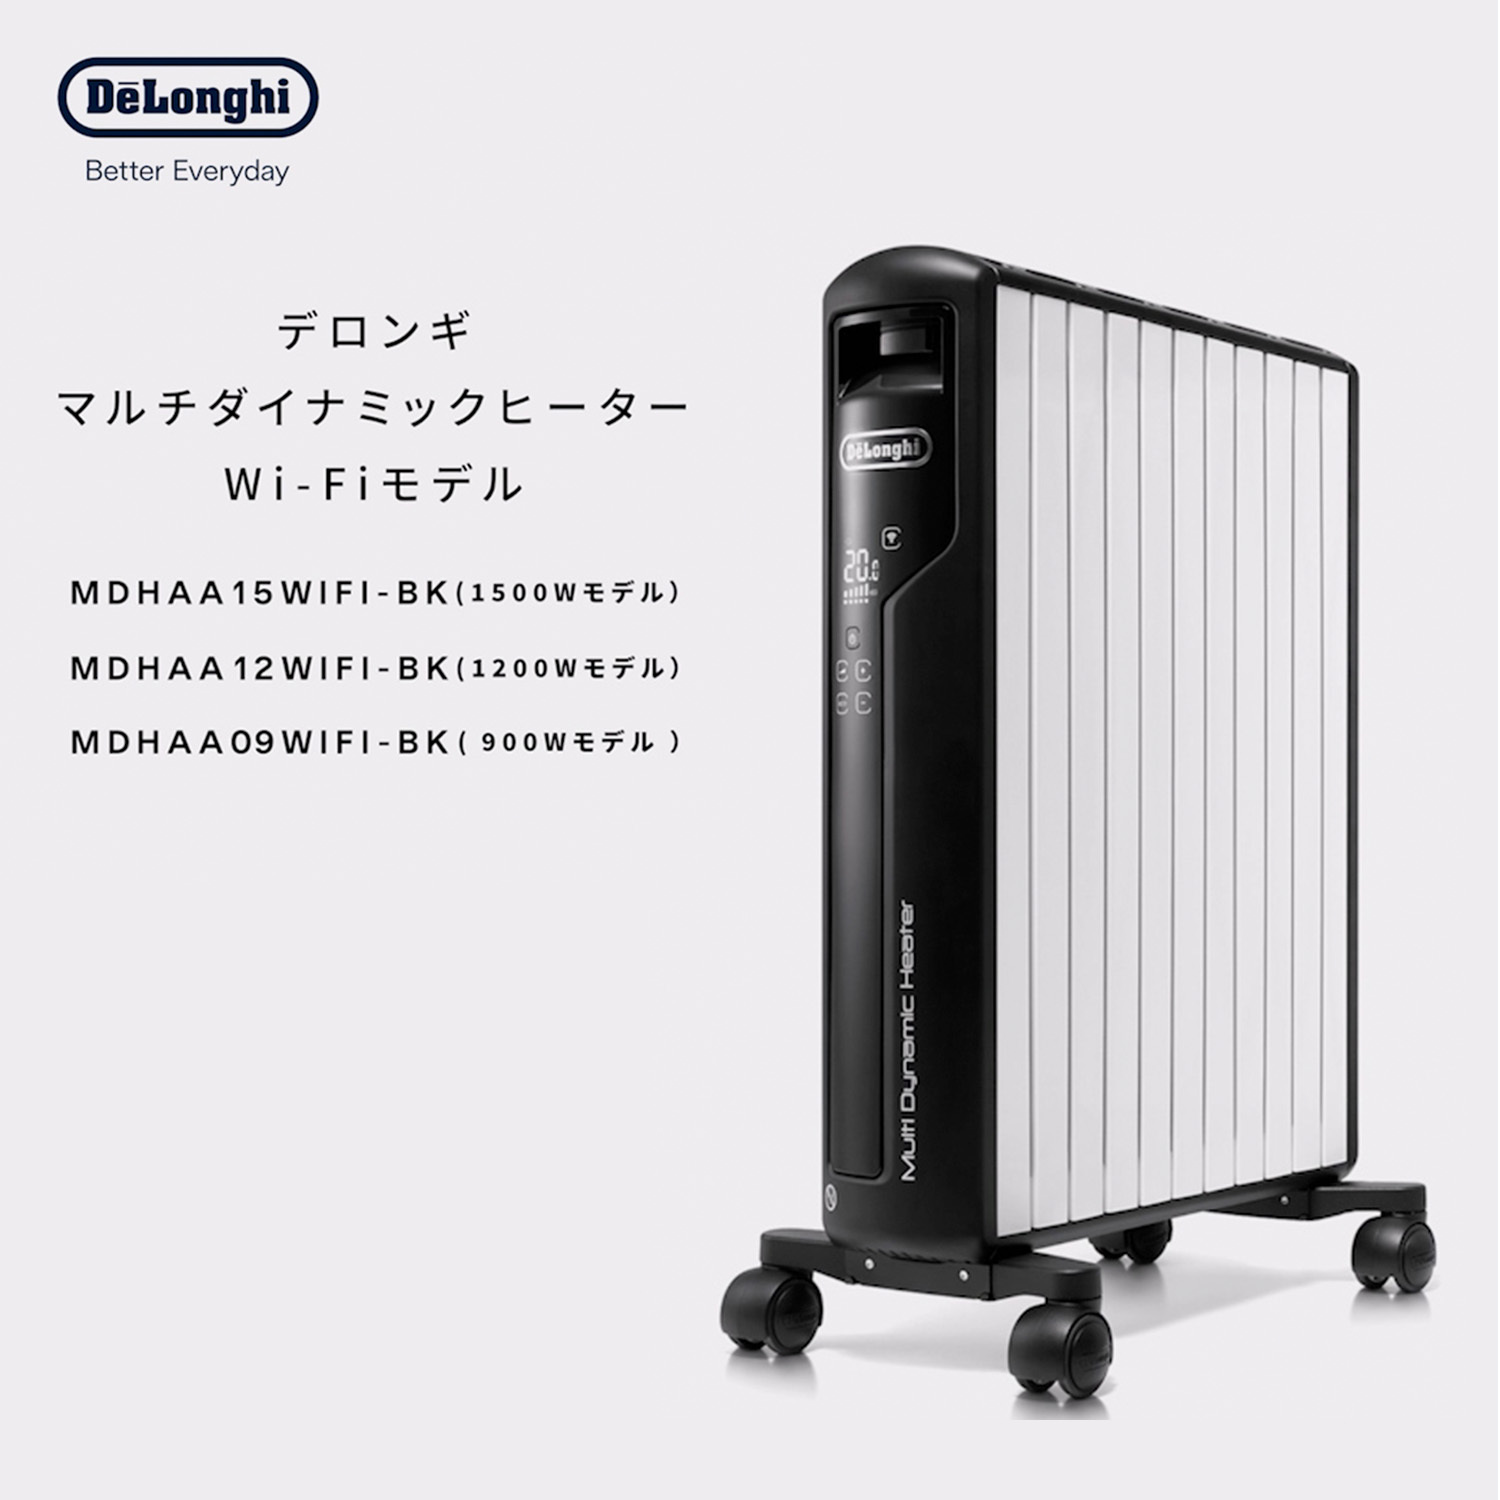 デロンギ マルチダイナミックヒーター Wi-Fiモデル MDHAA15WIFI-BK ...